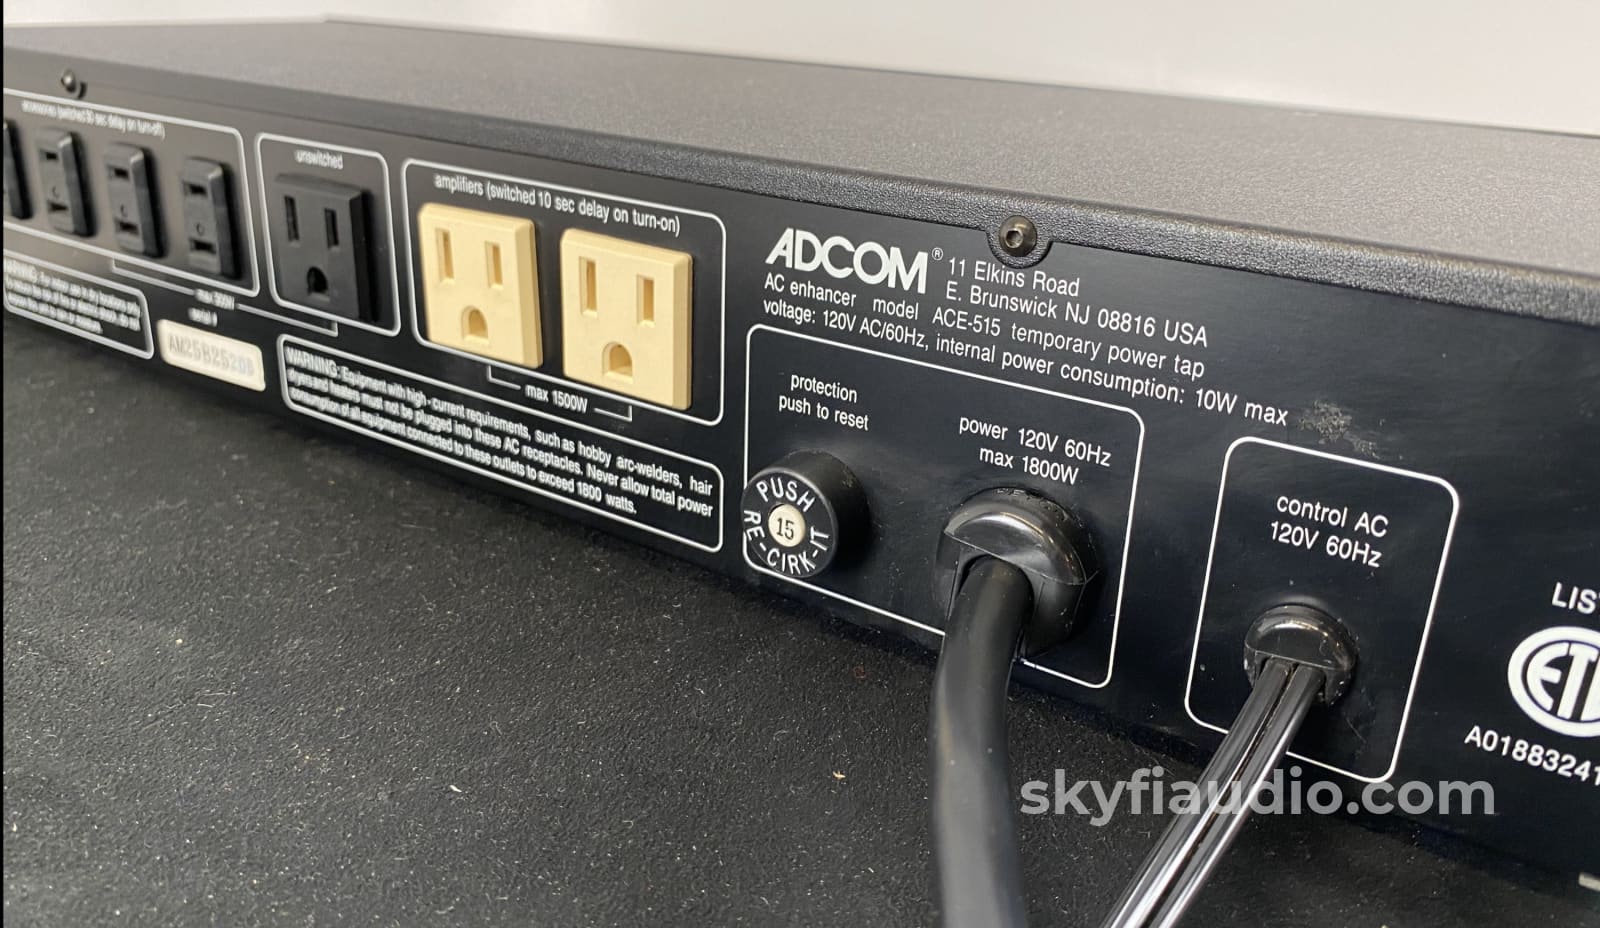 Adcom Ace-515 Ac Enhancer Power Strip & Switcher Conditioner